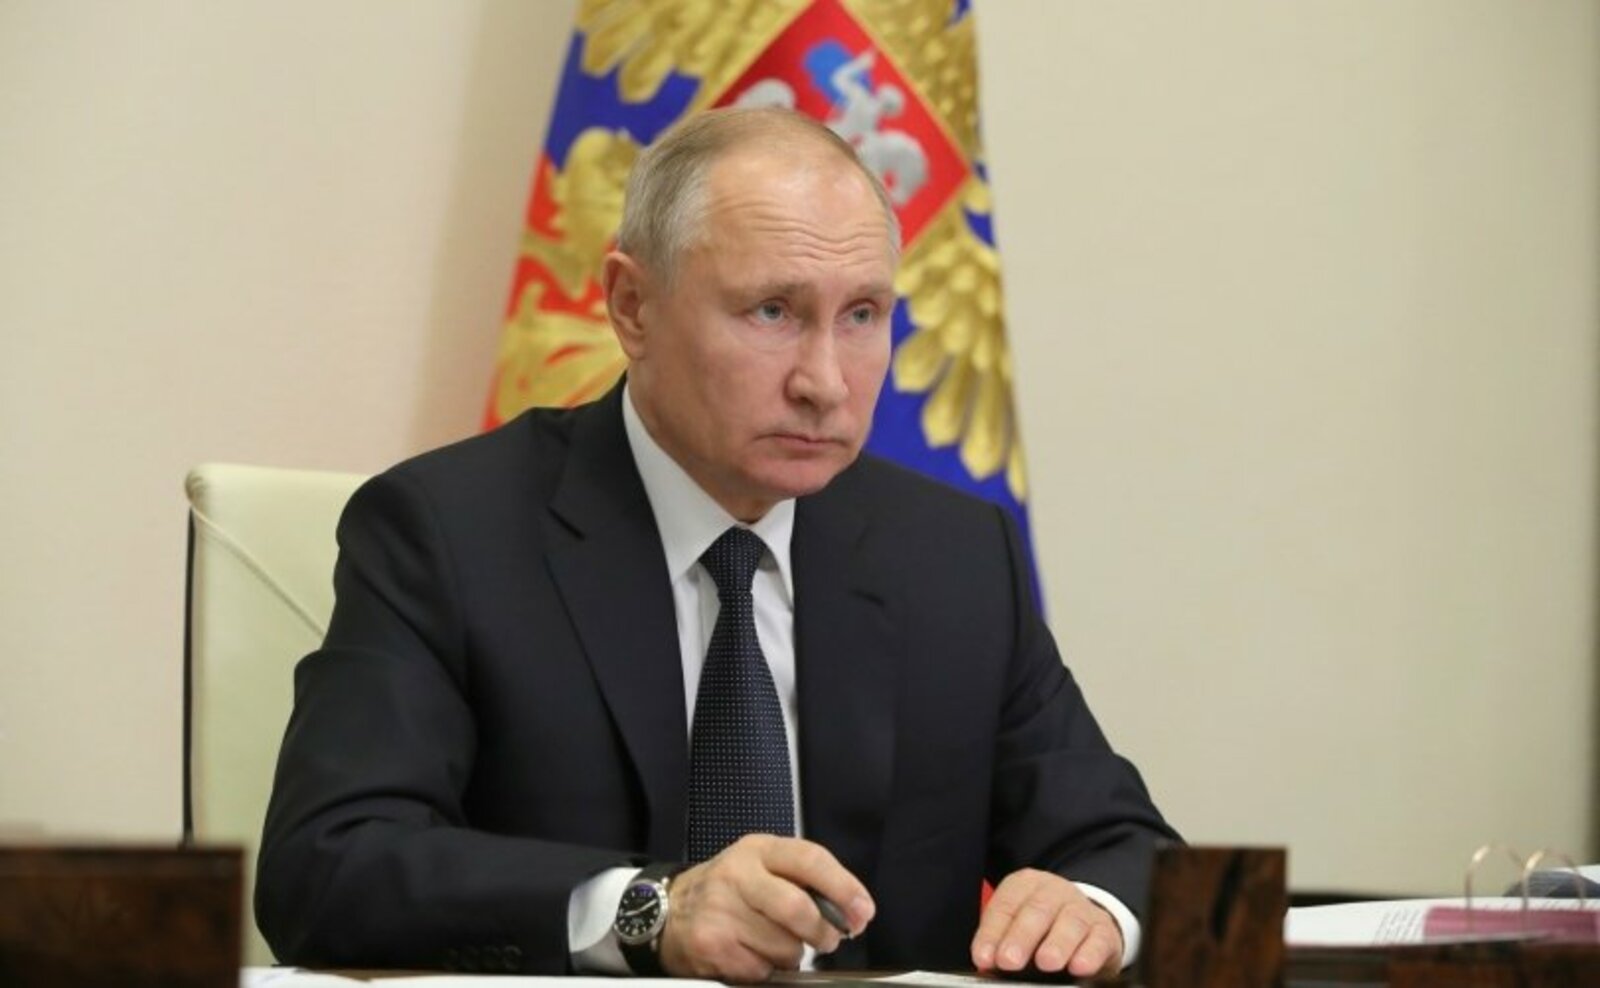 Путин подтвердил готовность к диалогу по украинскому вопросу, заявил Песков